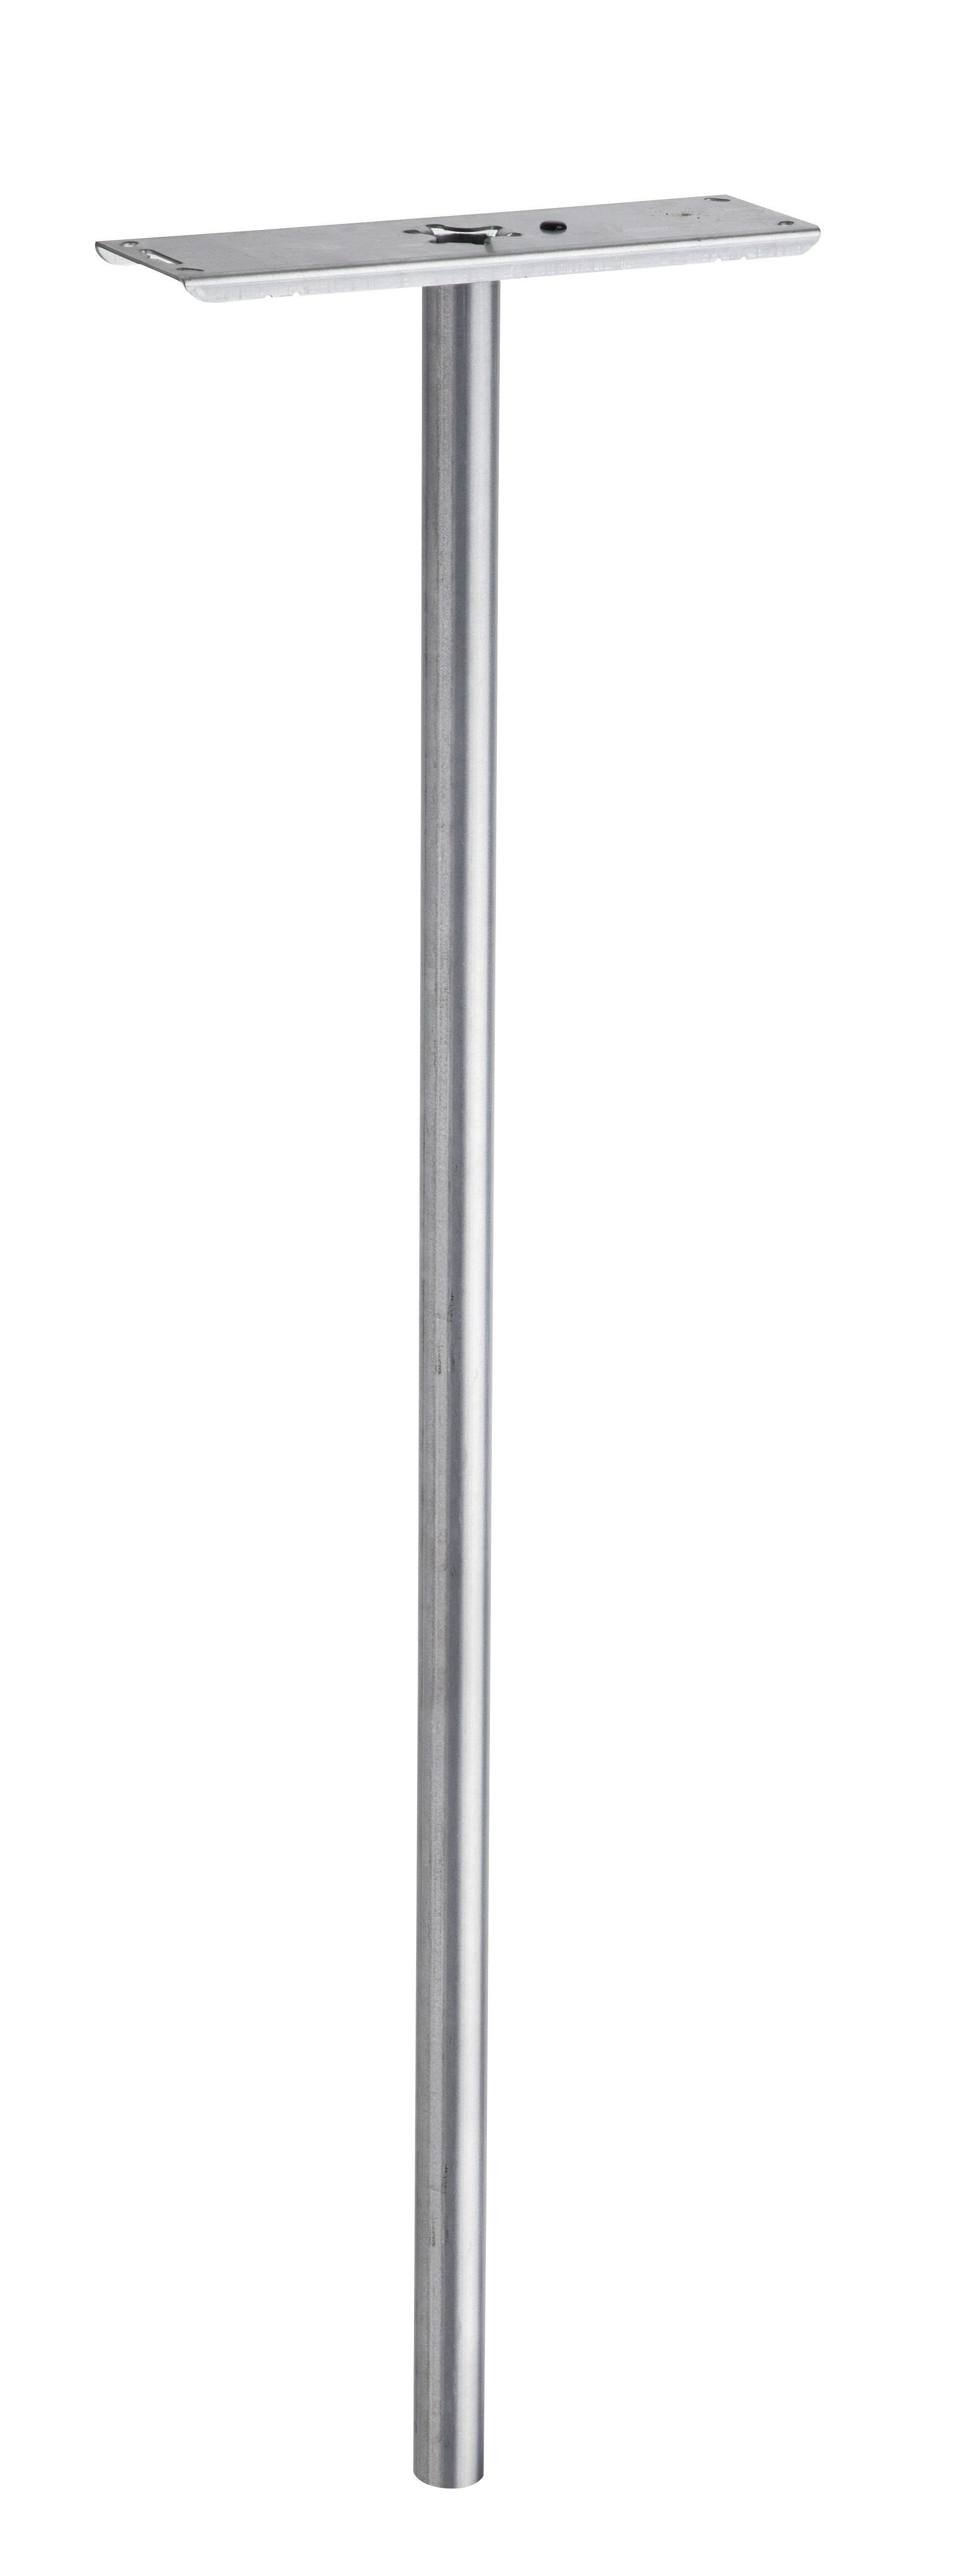 Verzinkter Briefkastenpfahl, Höhe 110 cm, Durchmesser 4,5 cm